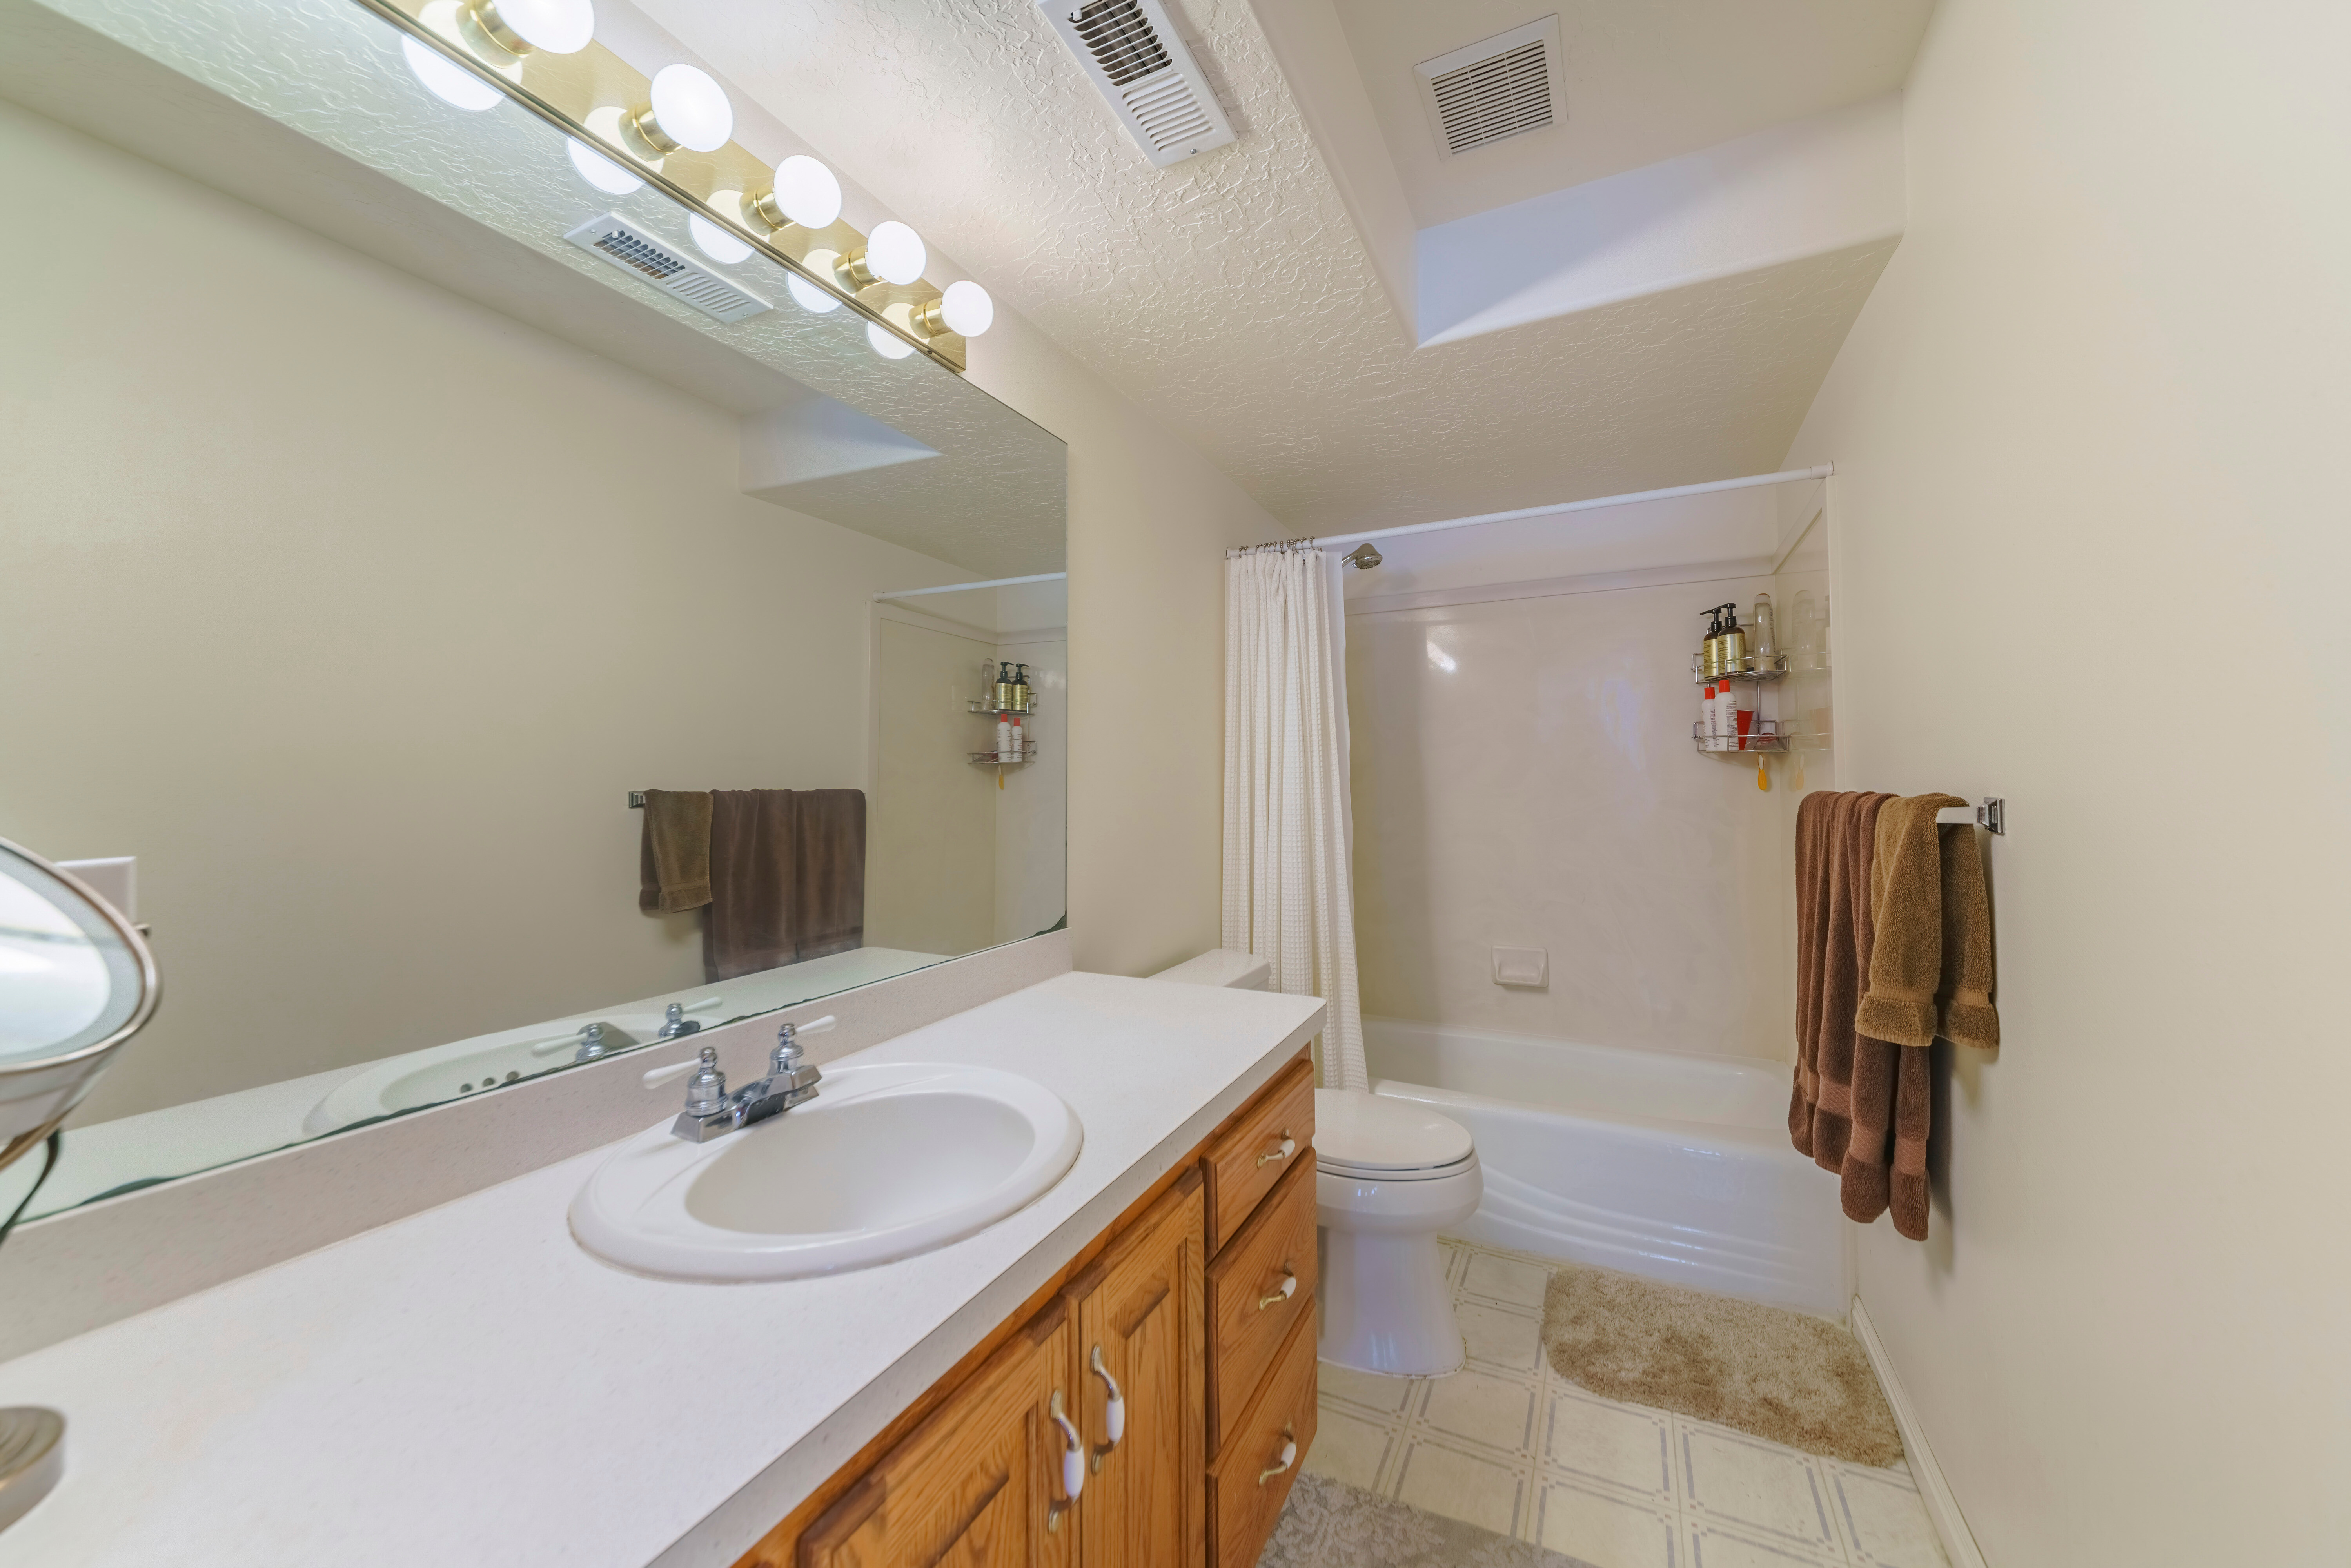 clean bathroom vanity sink with wall lighting